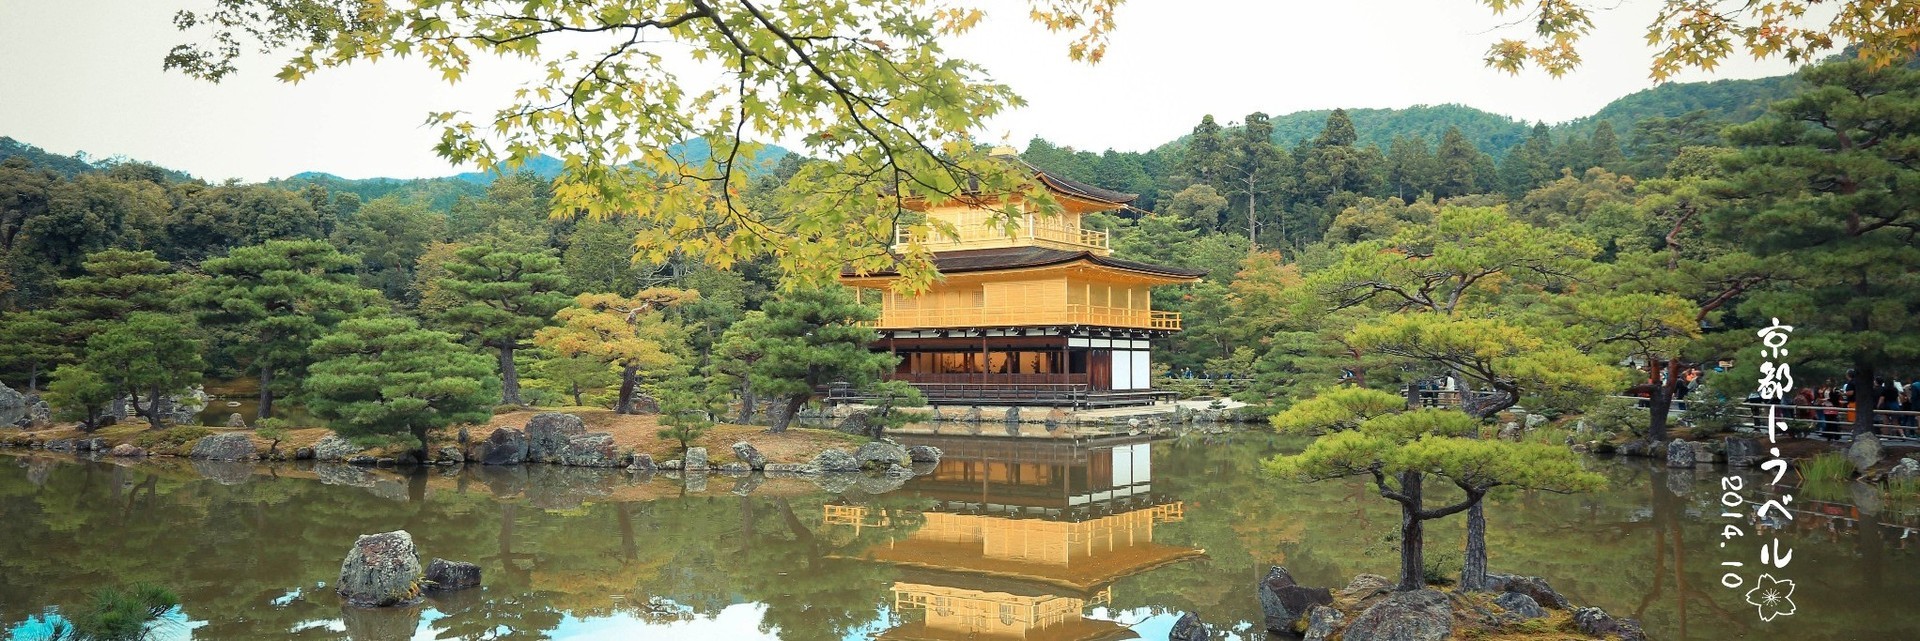 金阁寺Rokuonji